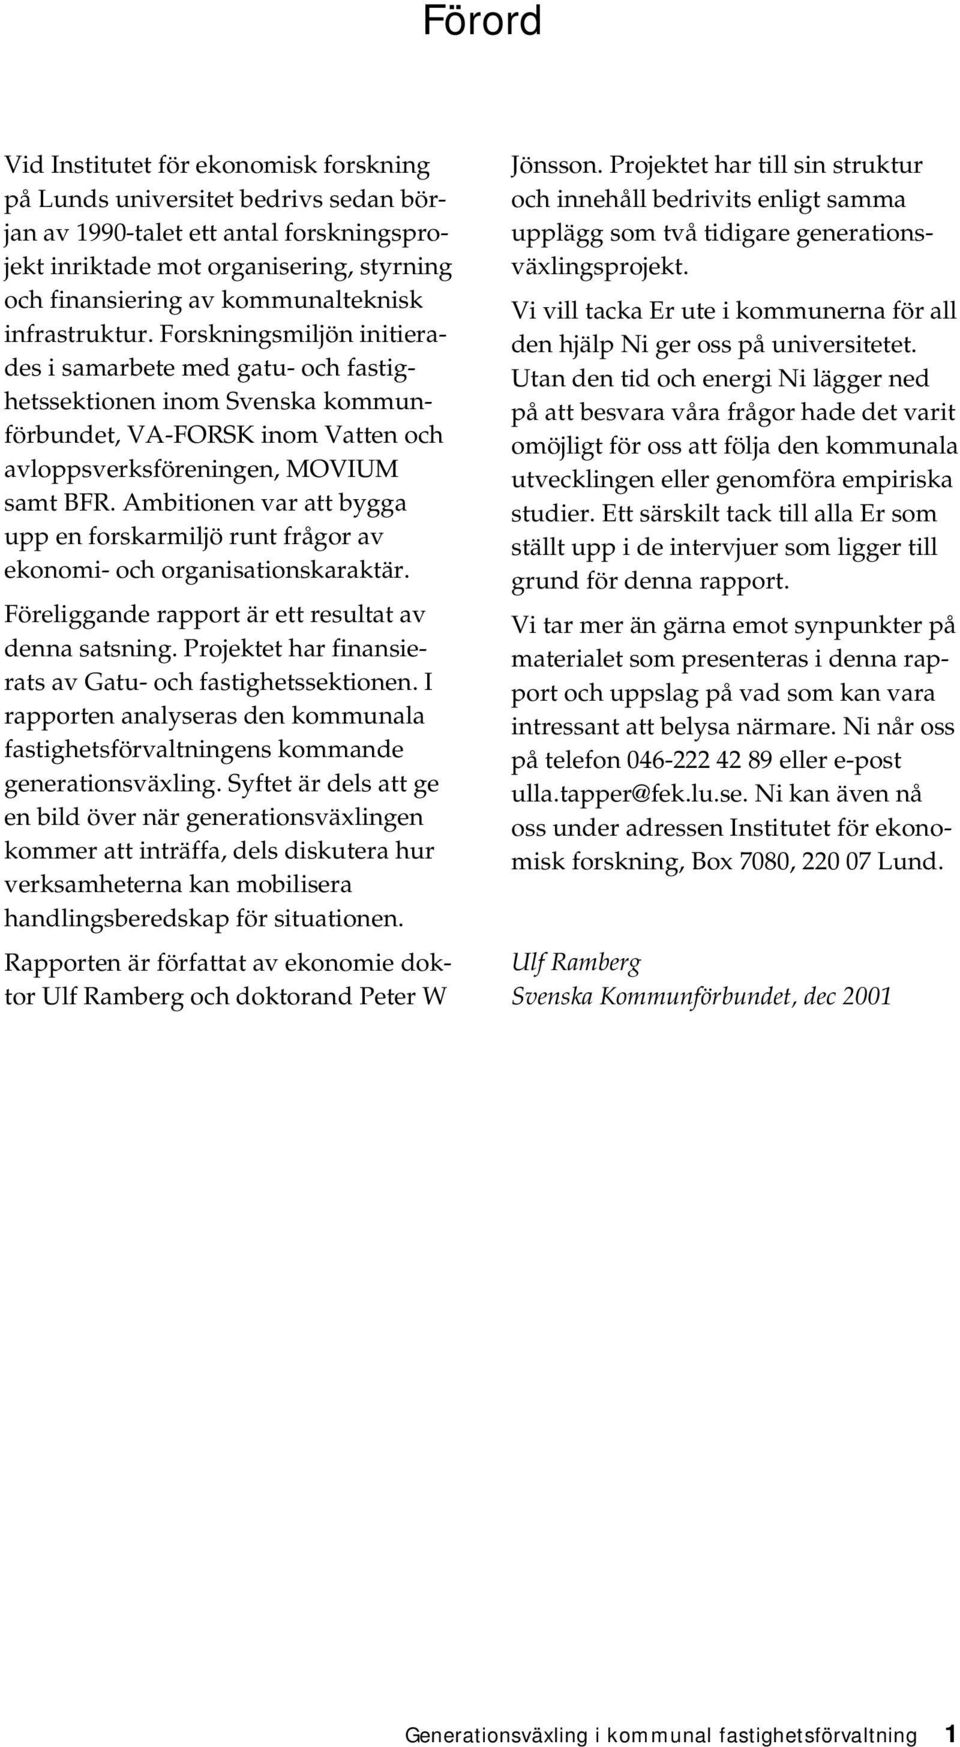 Forskningsmiljön initierades i samarbete med gatu- och fastighetssektionen inom Svenska kommunförbundet, VA-FORSK inom Vatten och avloppsverksföreningen, MOVIUM samt BFR.